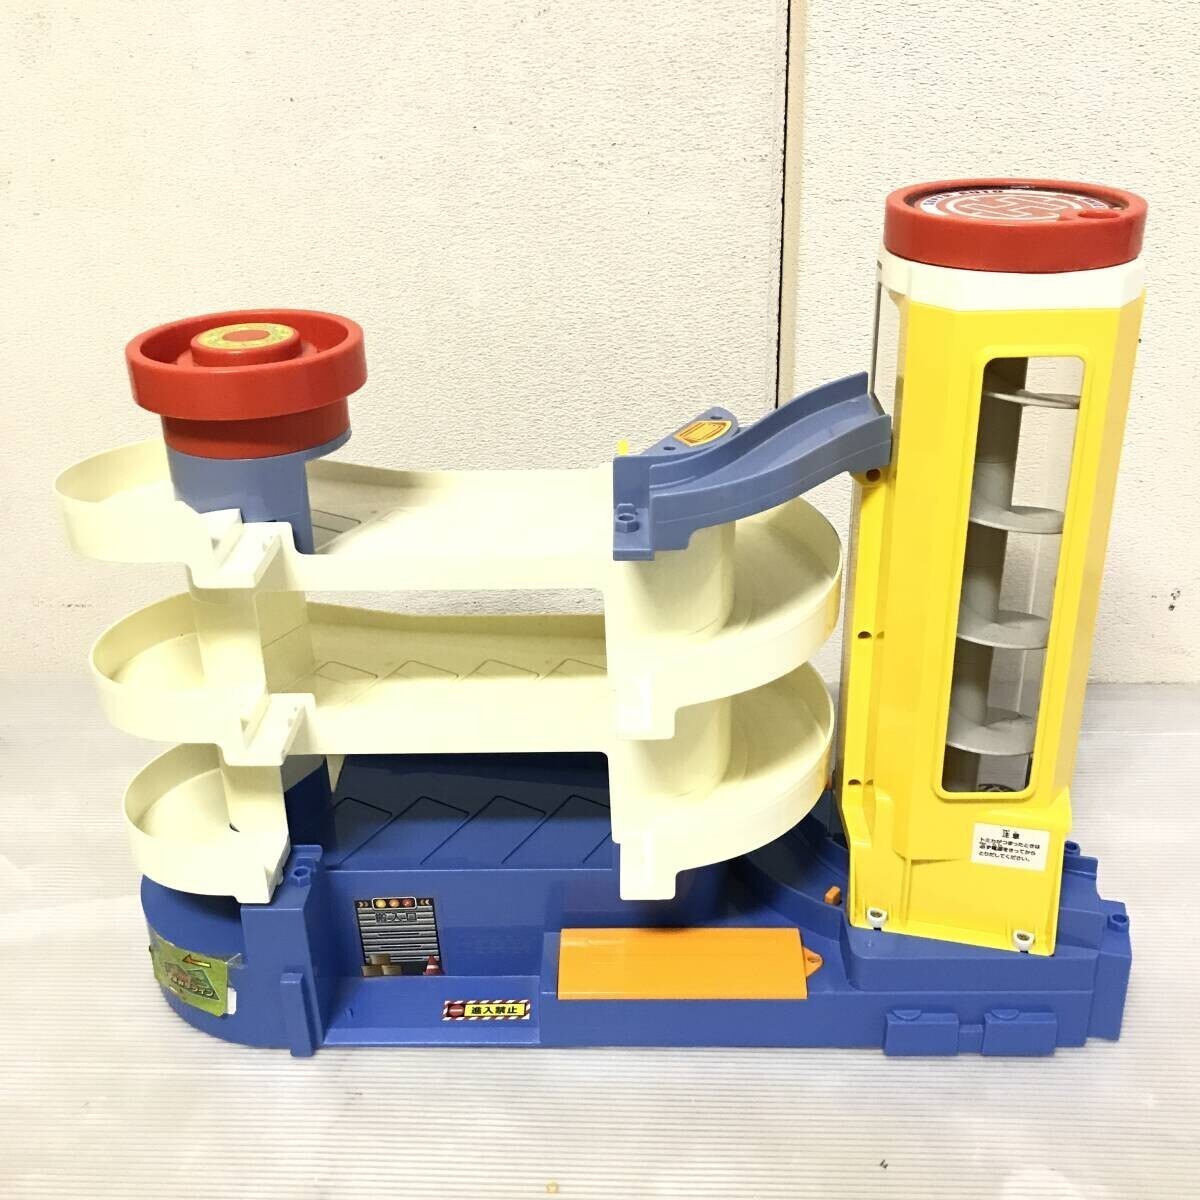 # タカラトミー トミカ スーパーオートビル パーキング エレベーター 車 玩具 おもちゃ コレクション 駐車場 動作品 中古品 #C30175_画像2